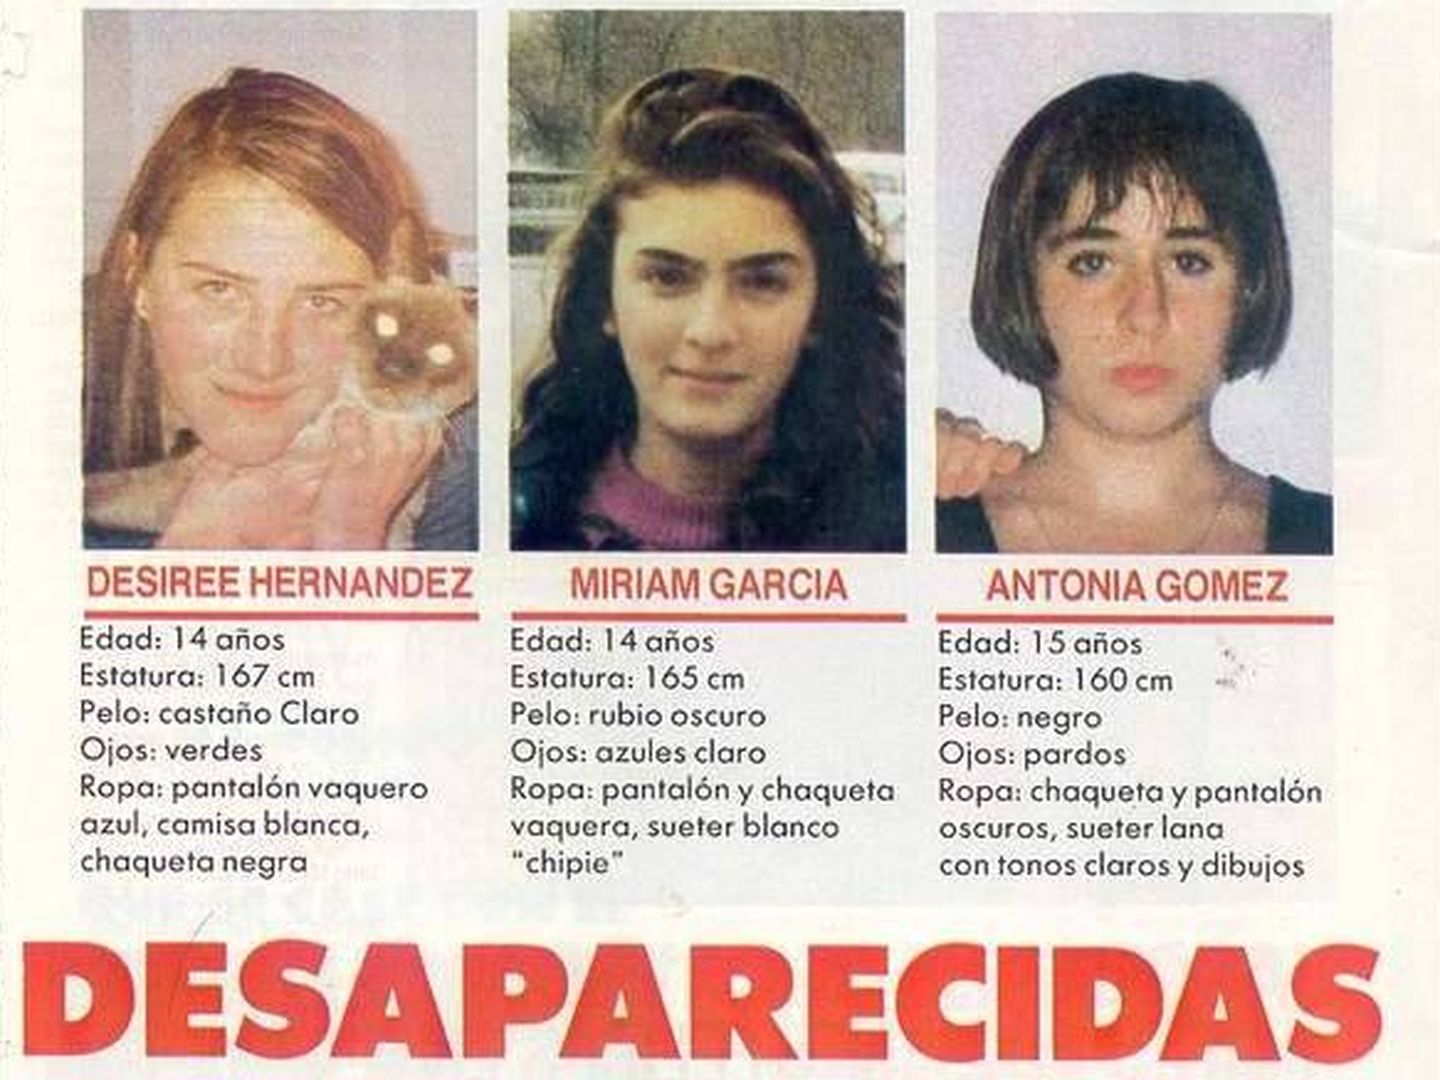 Cartel que anunciaba la desaparición de las tres jóvenes.